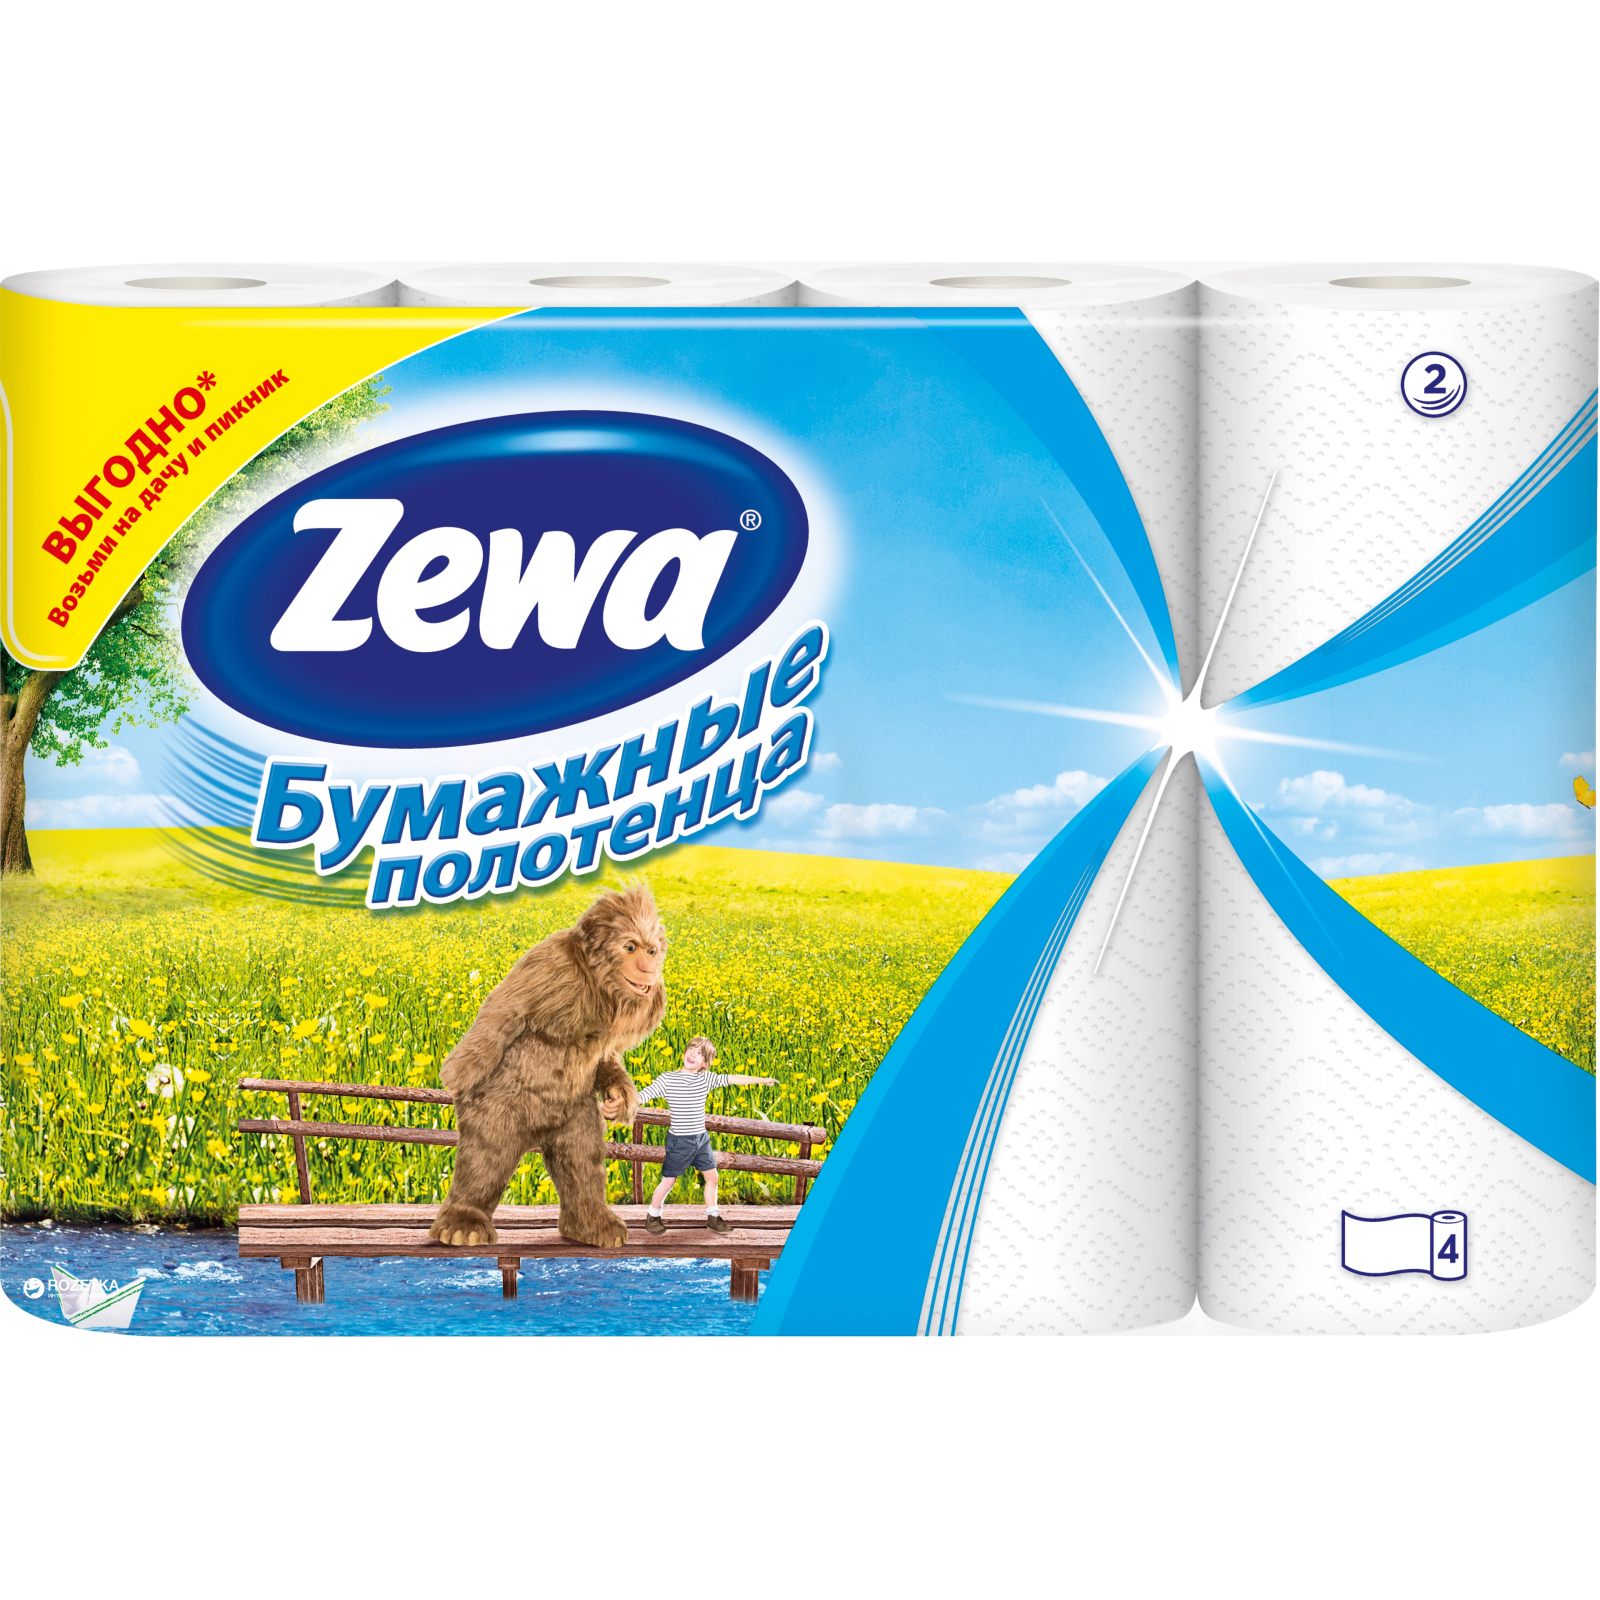 Бумажные полотенца Zewa 4 рулона (4605331024303)